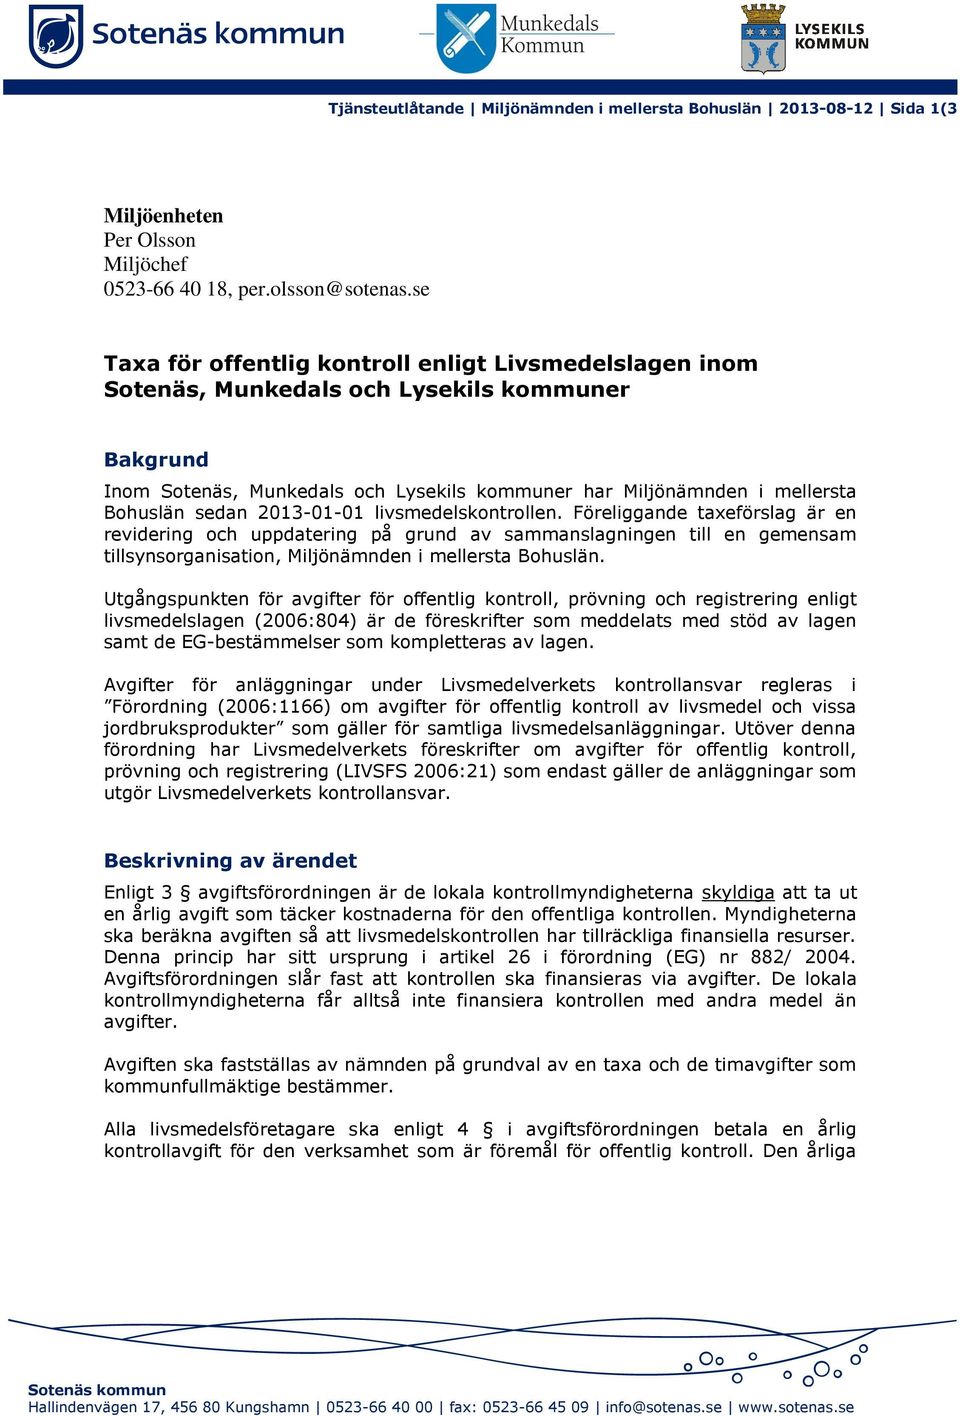 2013-01-01 livsmedelskontrollen. Föreliggande taxeförslag är en revidering och uppdatering på grund av sammanslagningen till en gemensam tillsynsorganisation, Miljönämnden i mellersta Bohuslän.